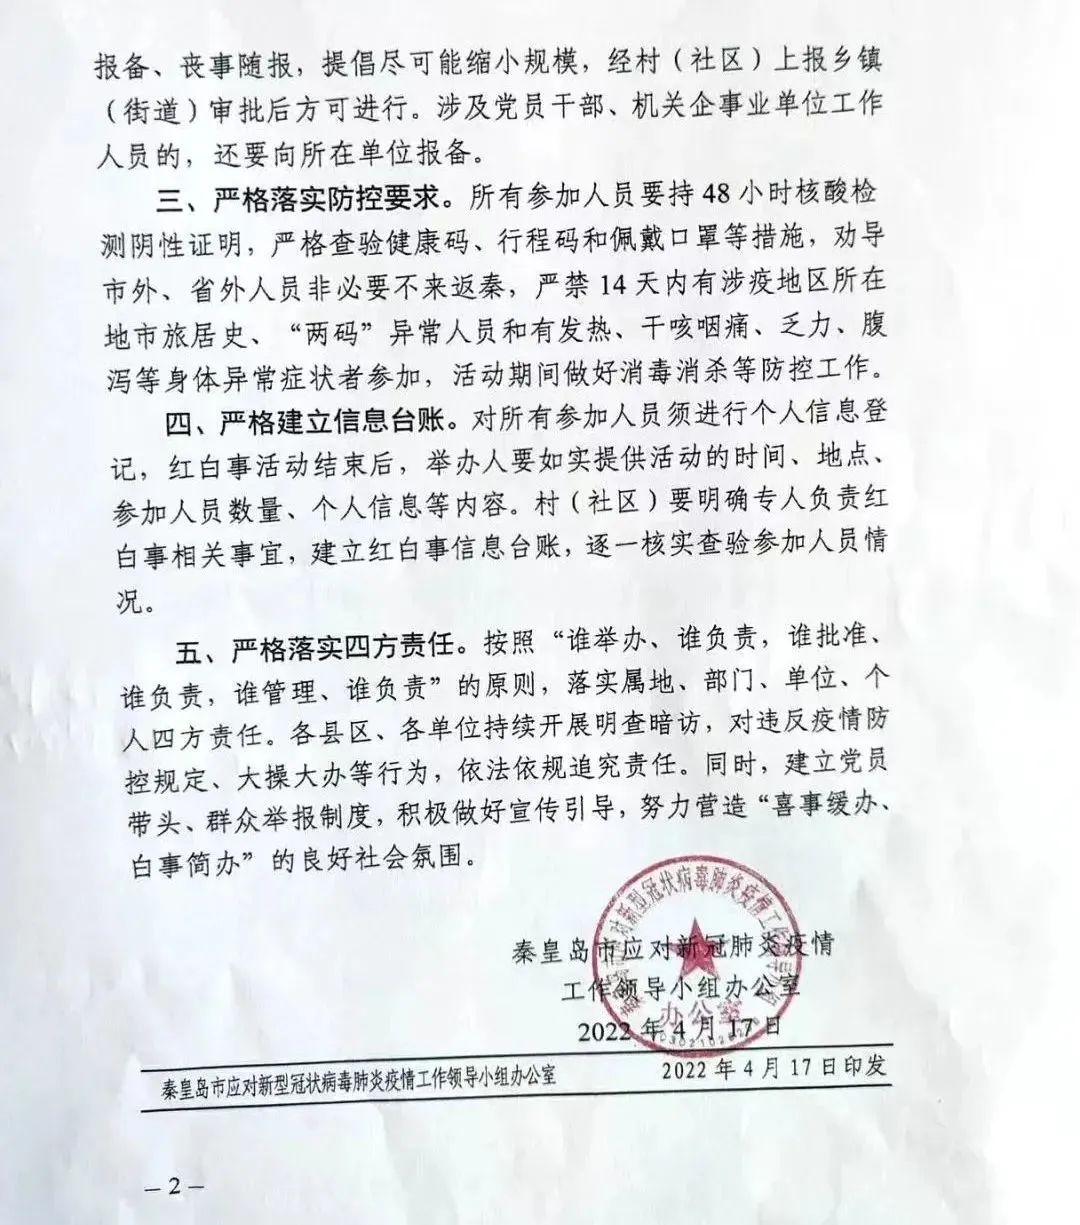 西安市长安区启动秦岭核心保护区联合执法宣传活动-长安区融媒体中心-西安网